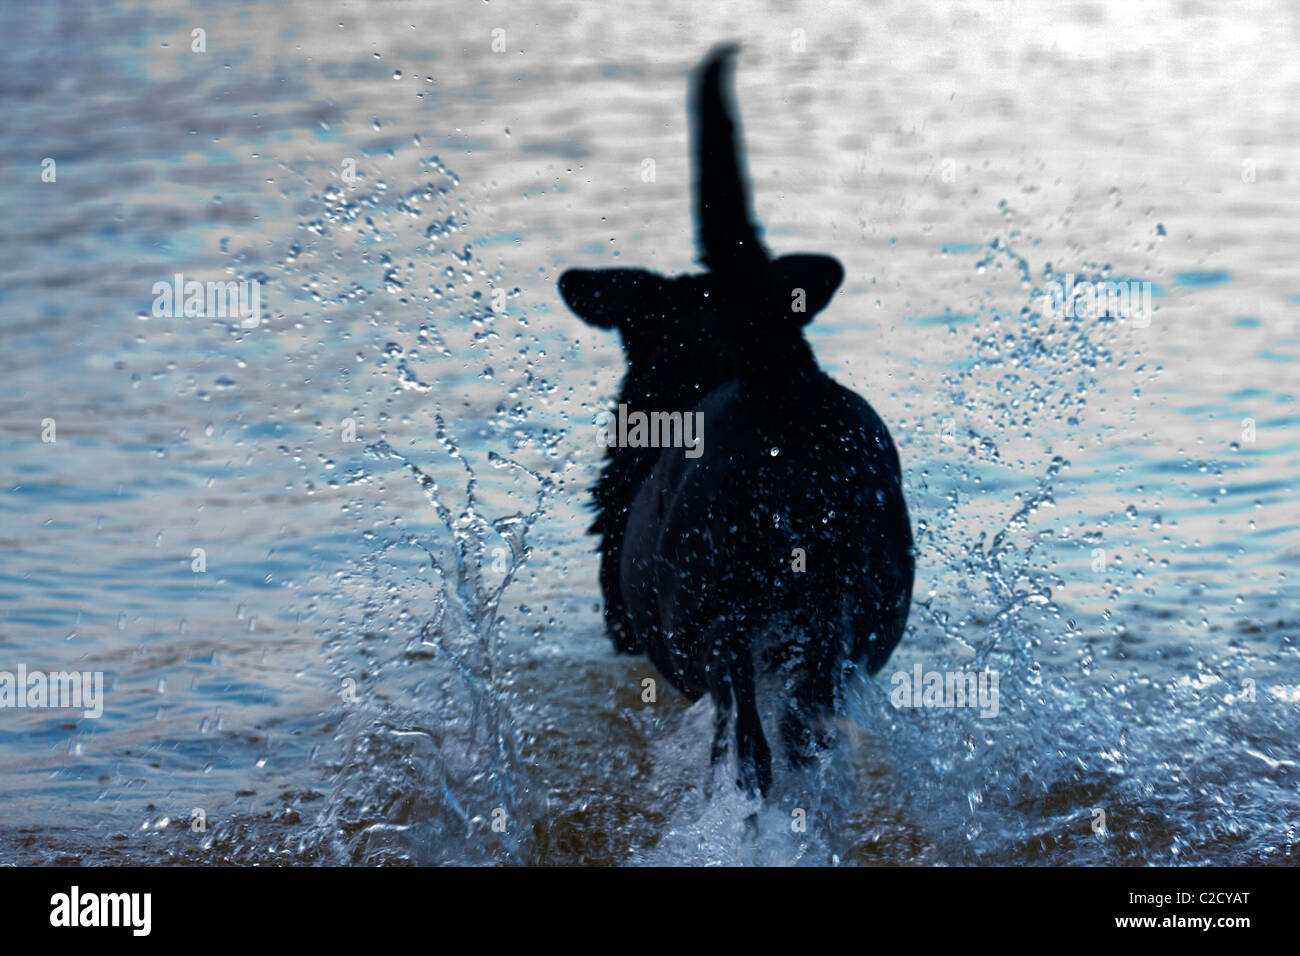 A black Labrador retriever heads for its quarry. Stock Photo